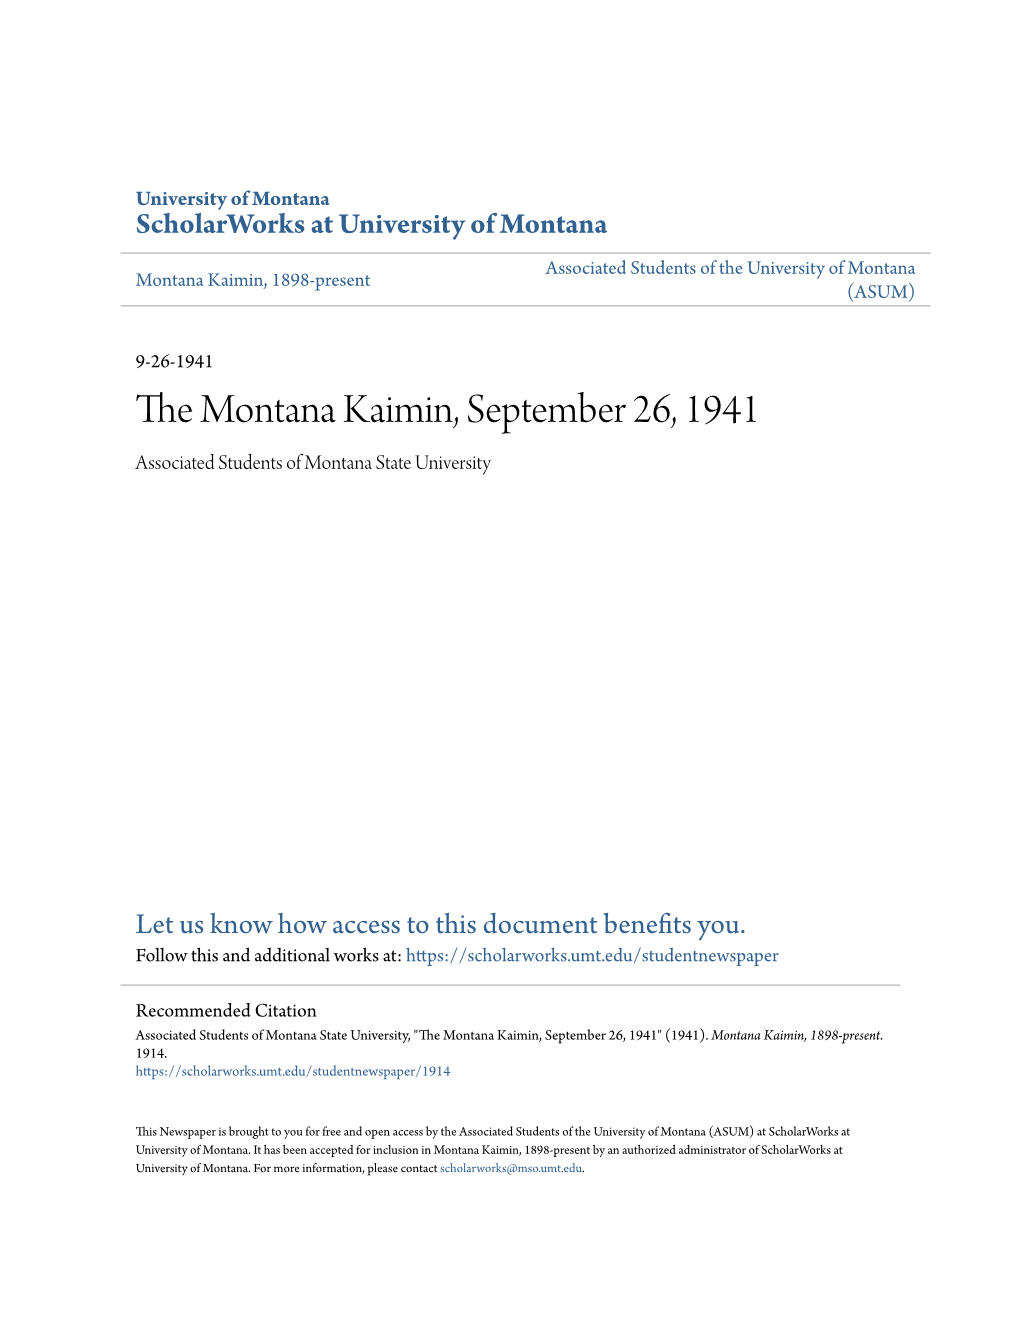 The Montana Kaimin, September 26, 1941